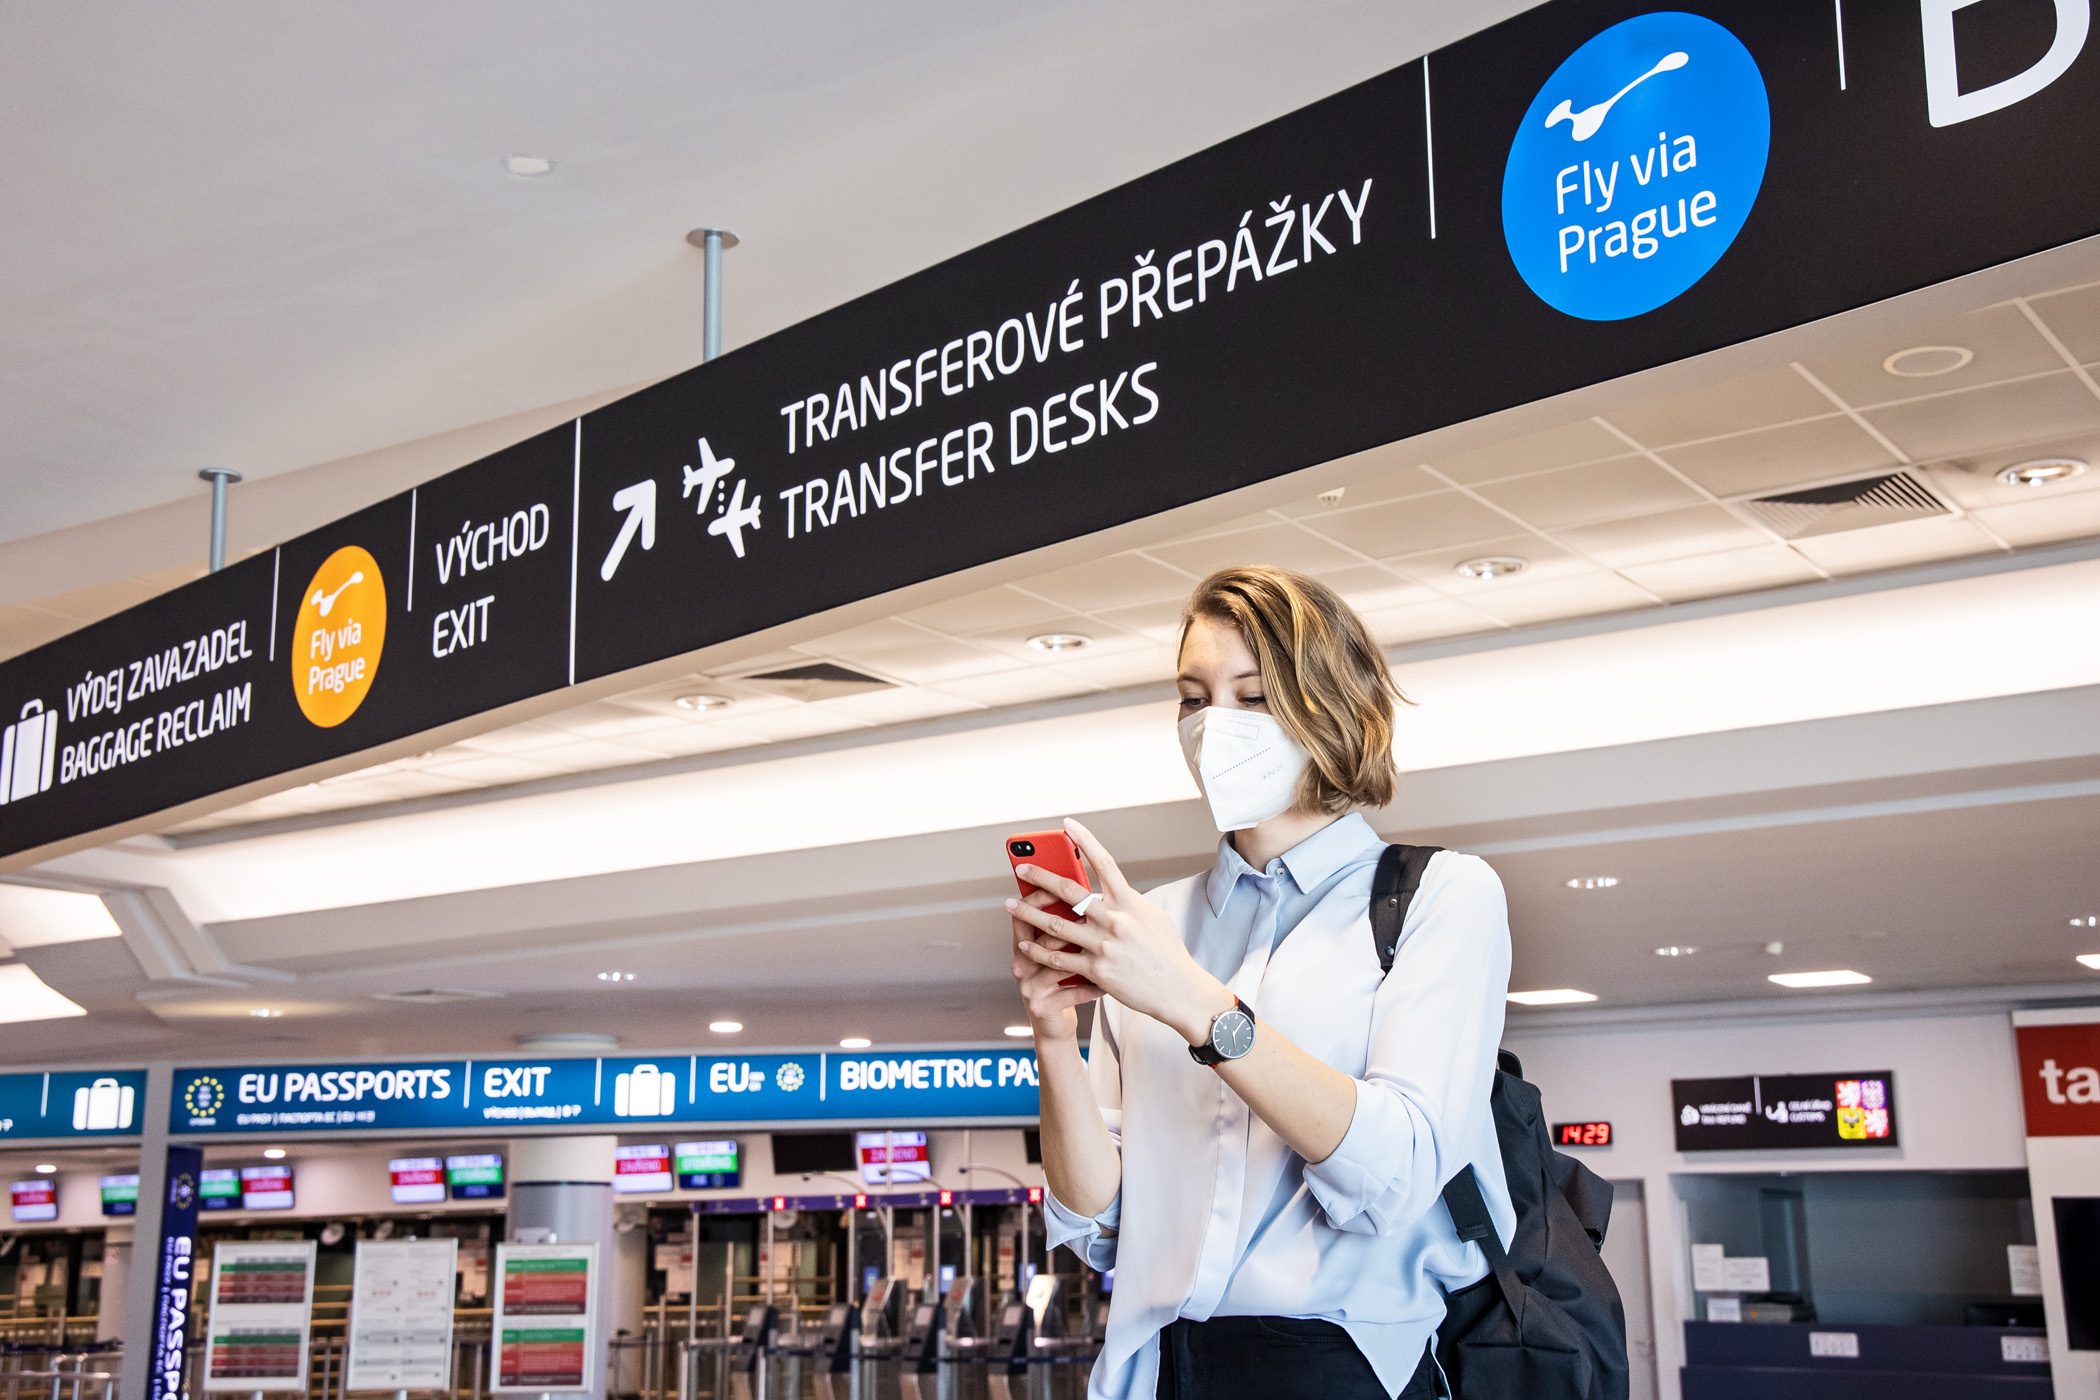 El aeropuerto de Praga lanza el servicio "Fly via Prague" para pasajeros en tránsito y presenta a Kiwi.com como socio principal